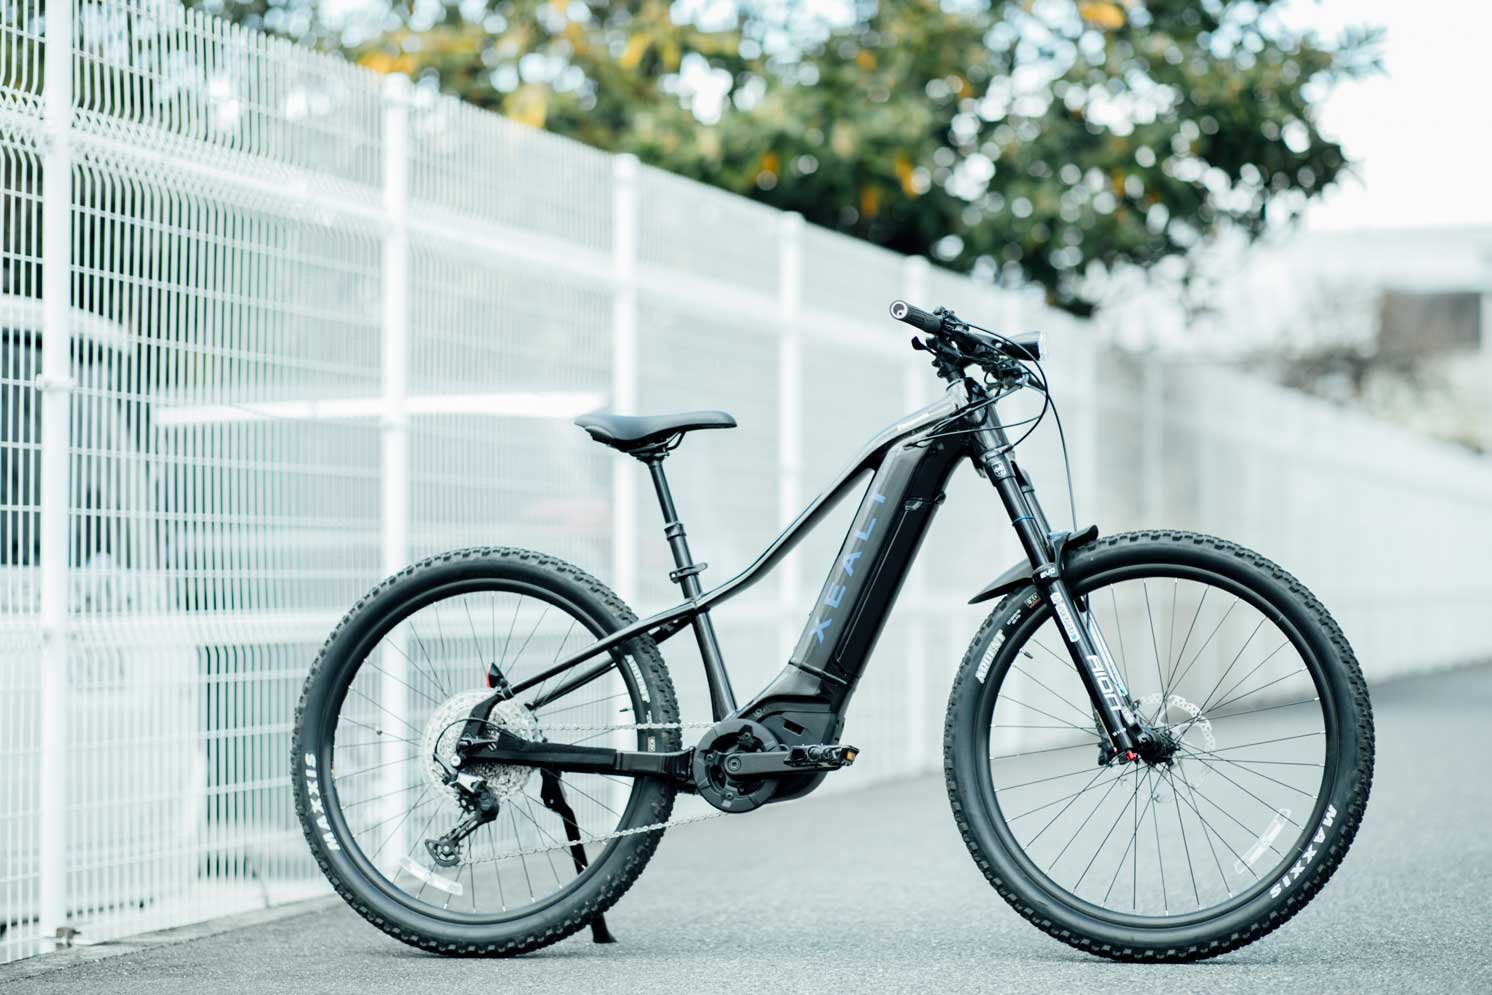 マウンテンバイク型電動アシスト自転車「XEALT M5」 | Make New Magazine「未来の定番」をつくるために、パナソニックのリアルな姿を伝えるメディア